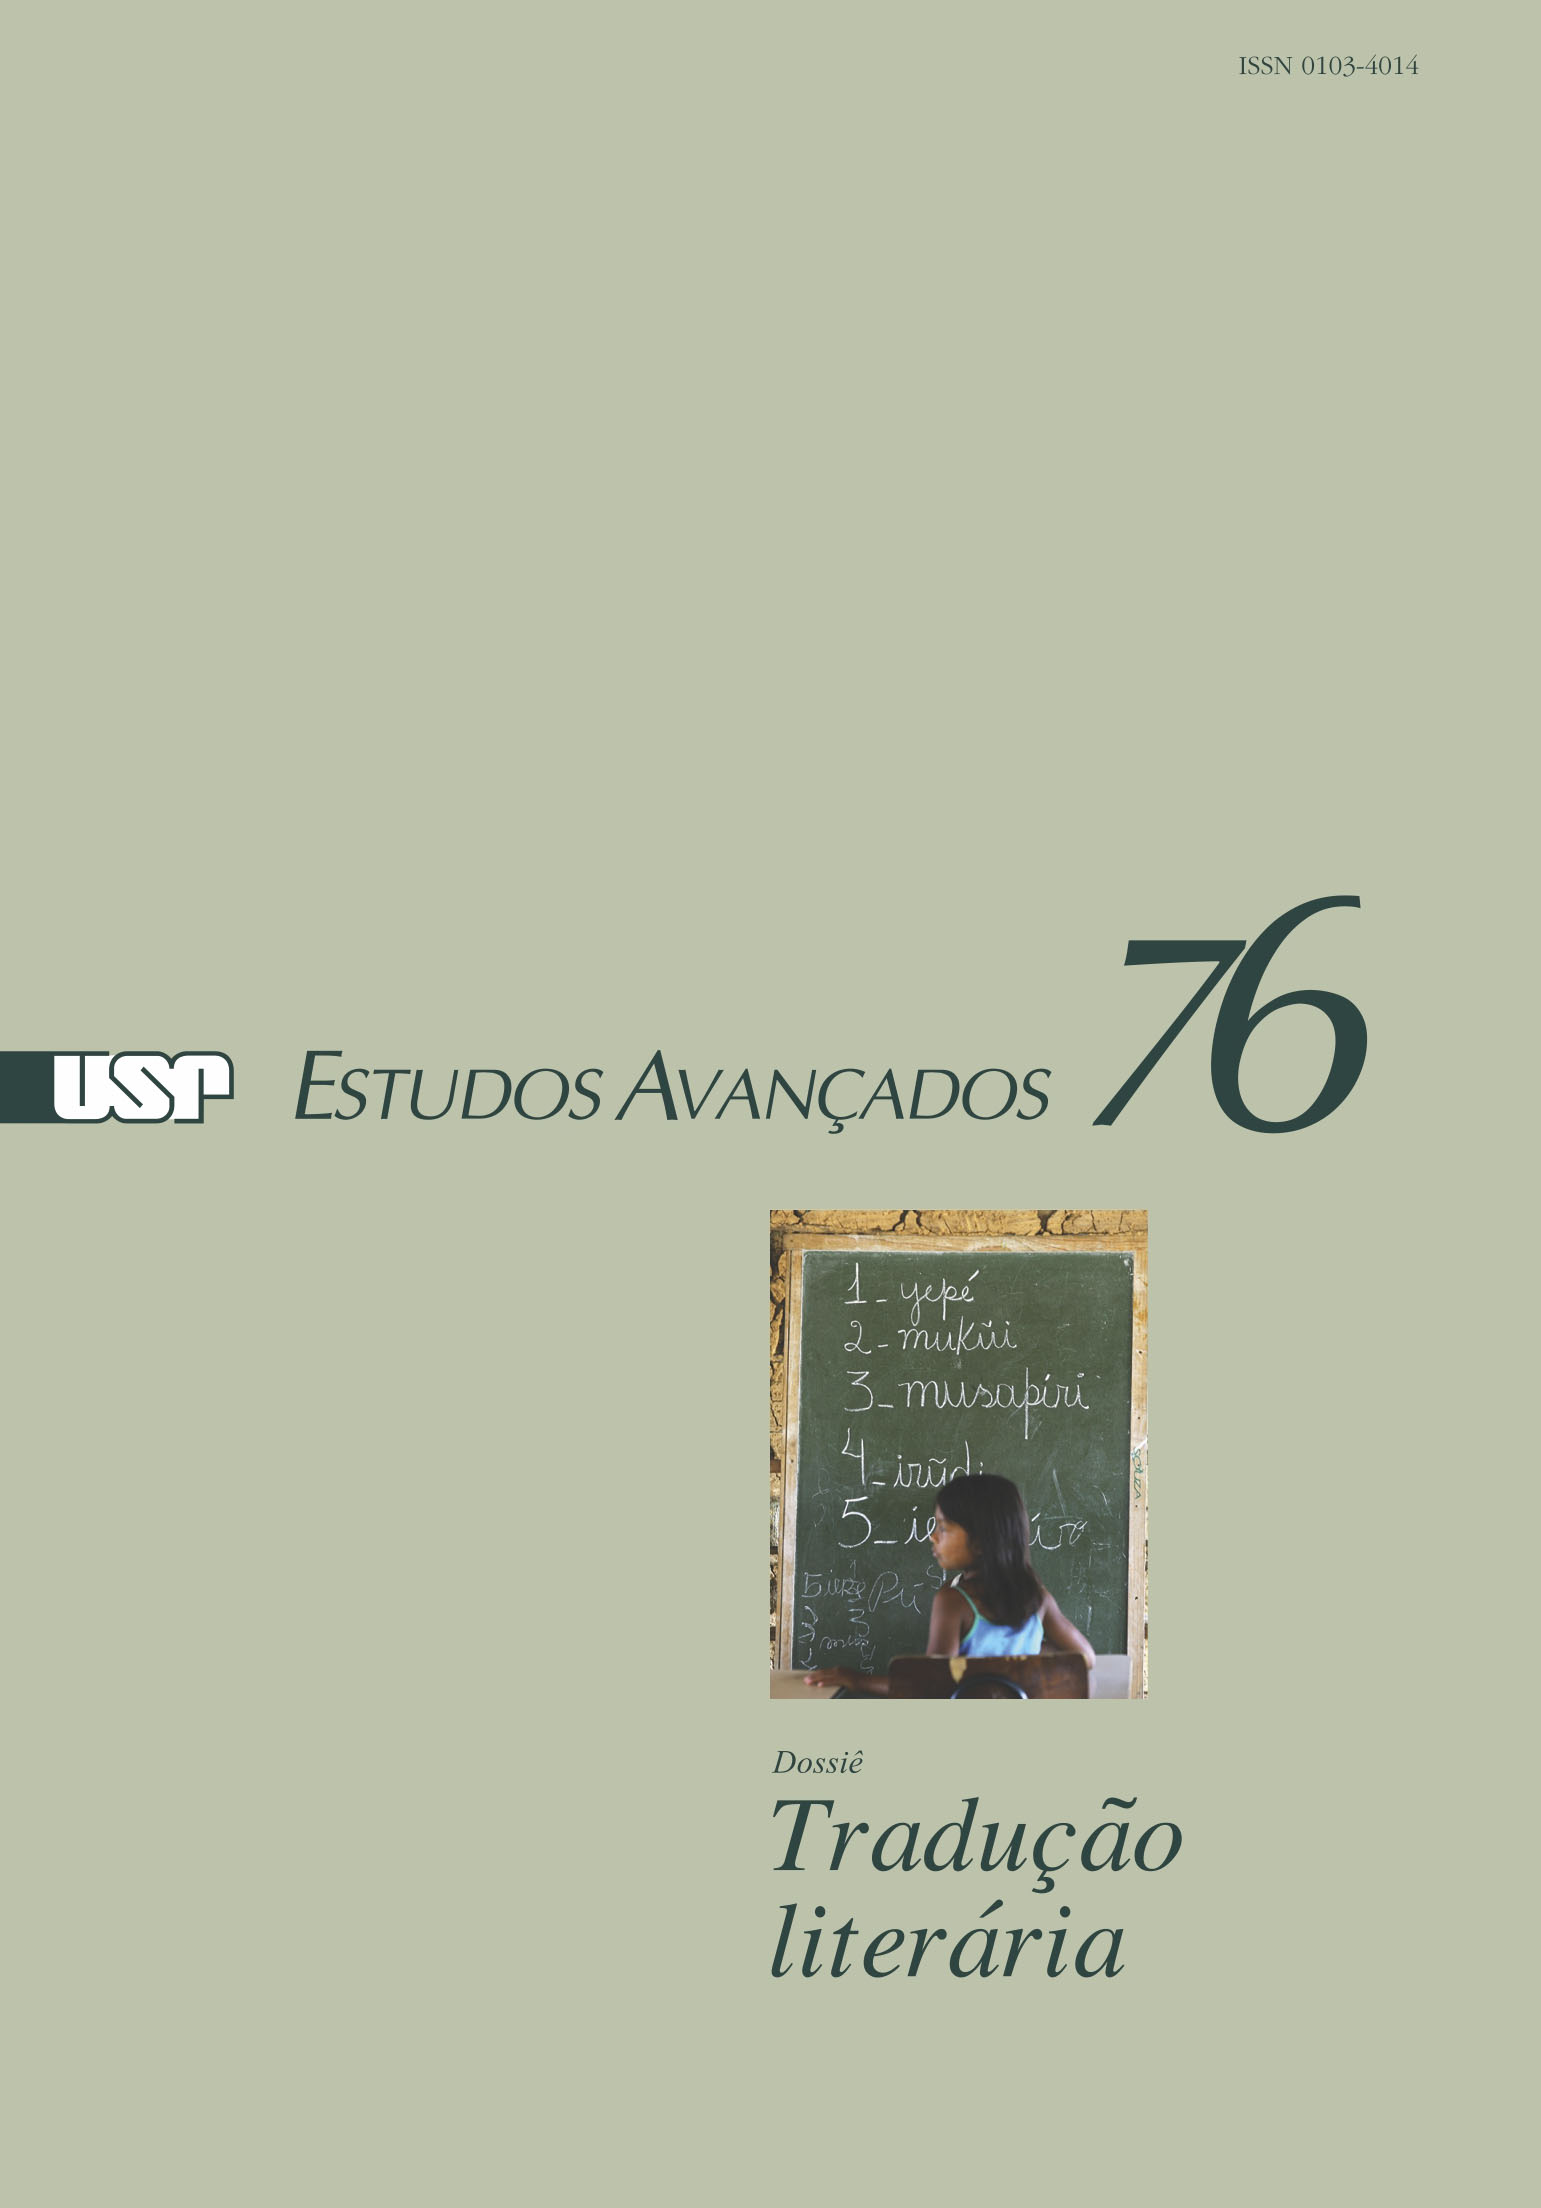 Capa Revista Estudos Avançados v26 n76 